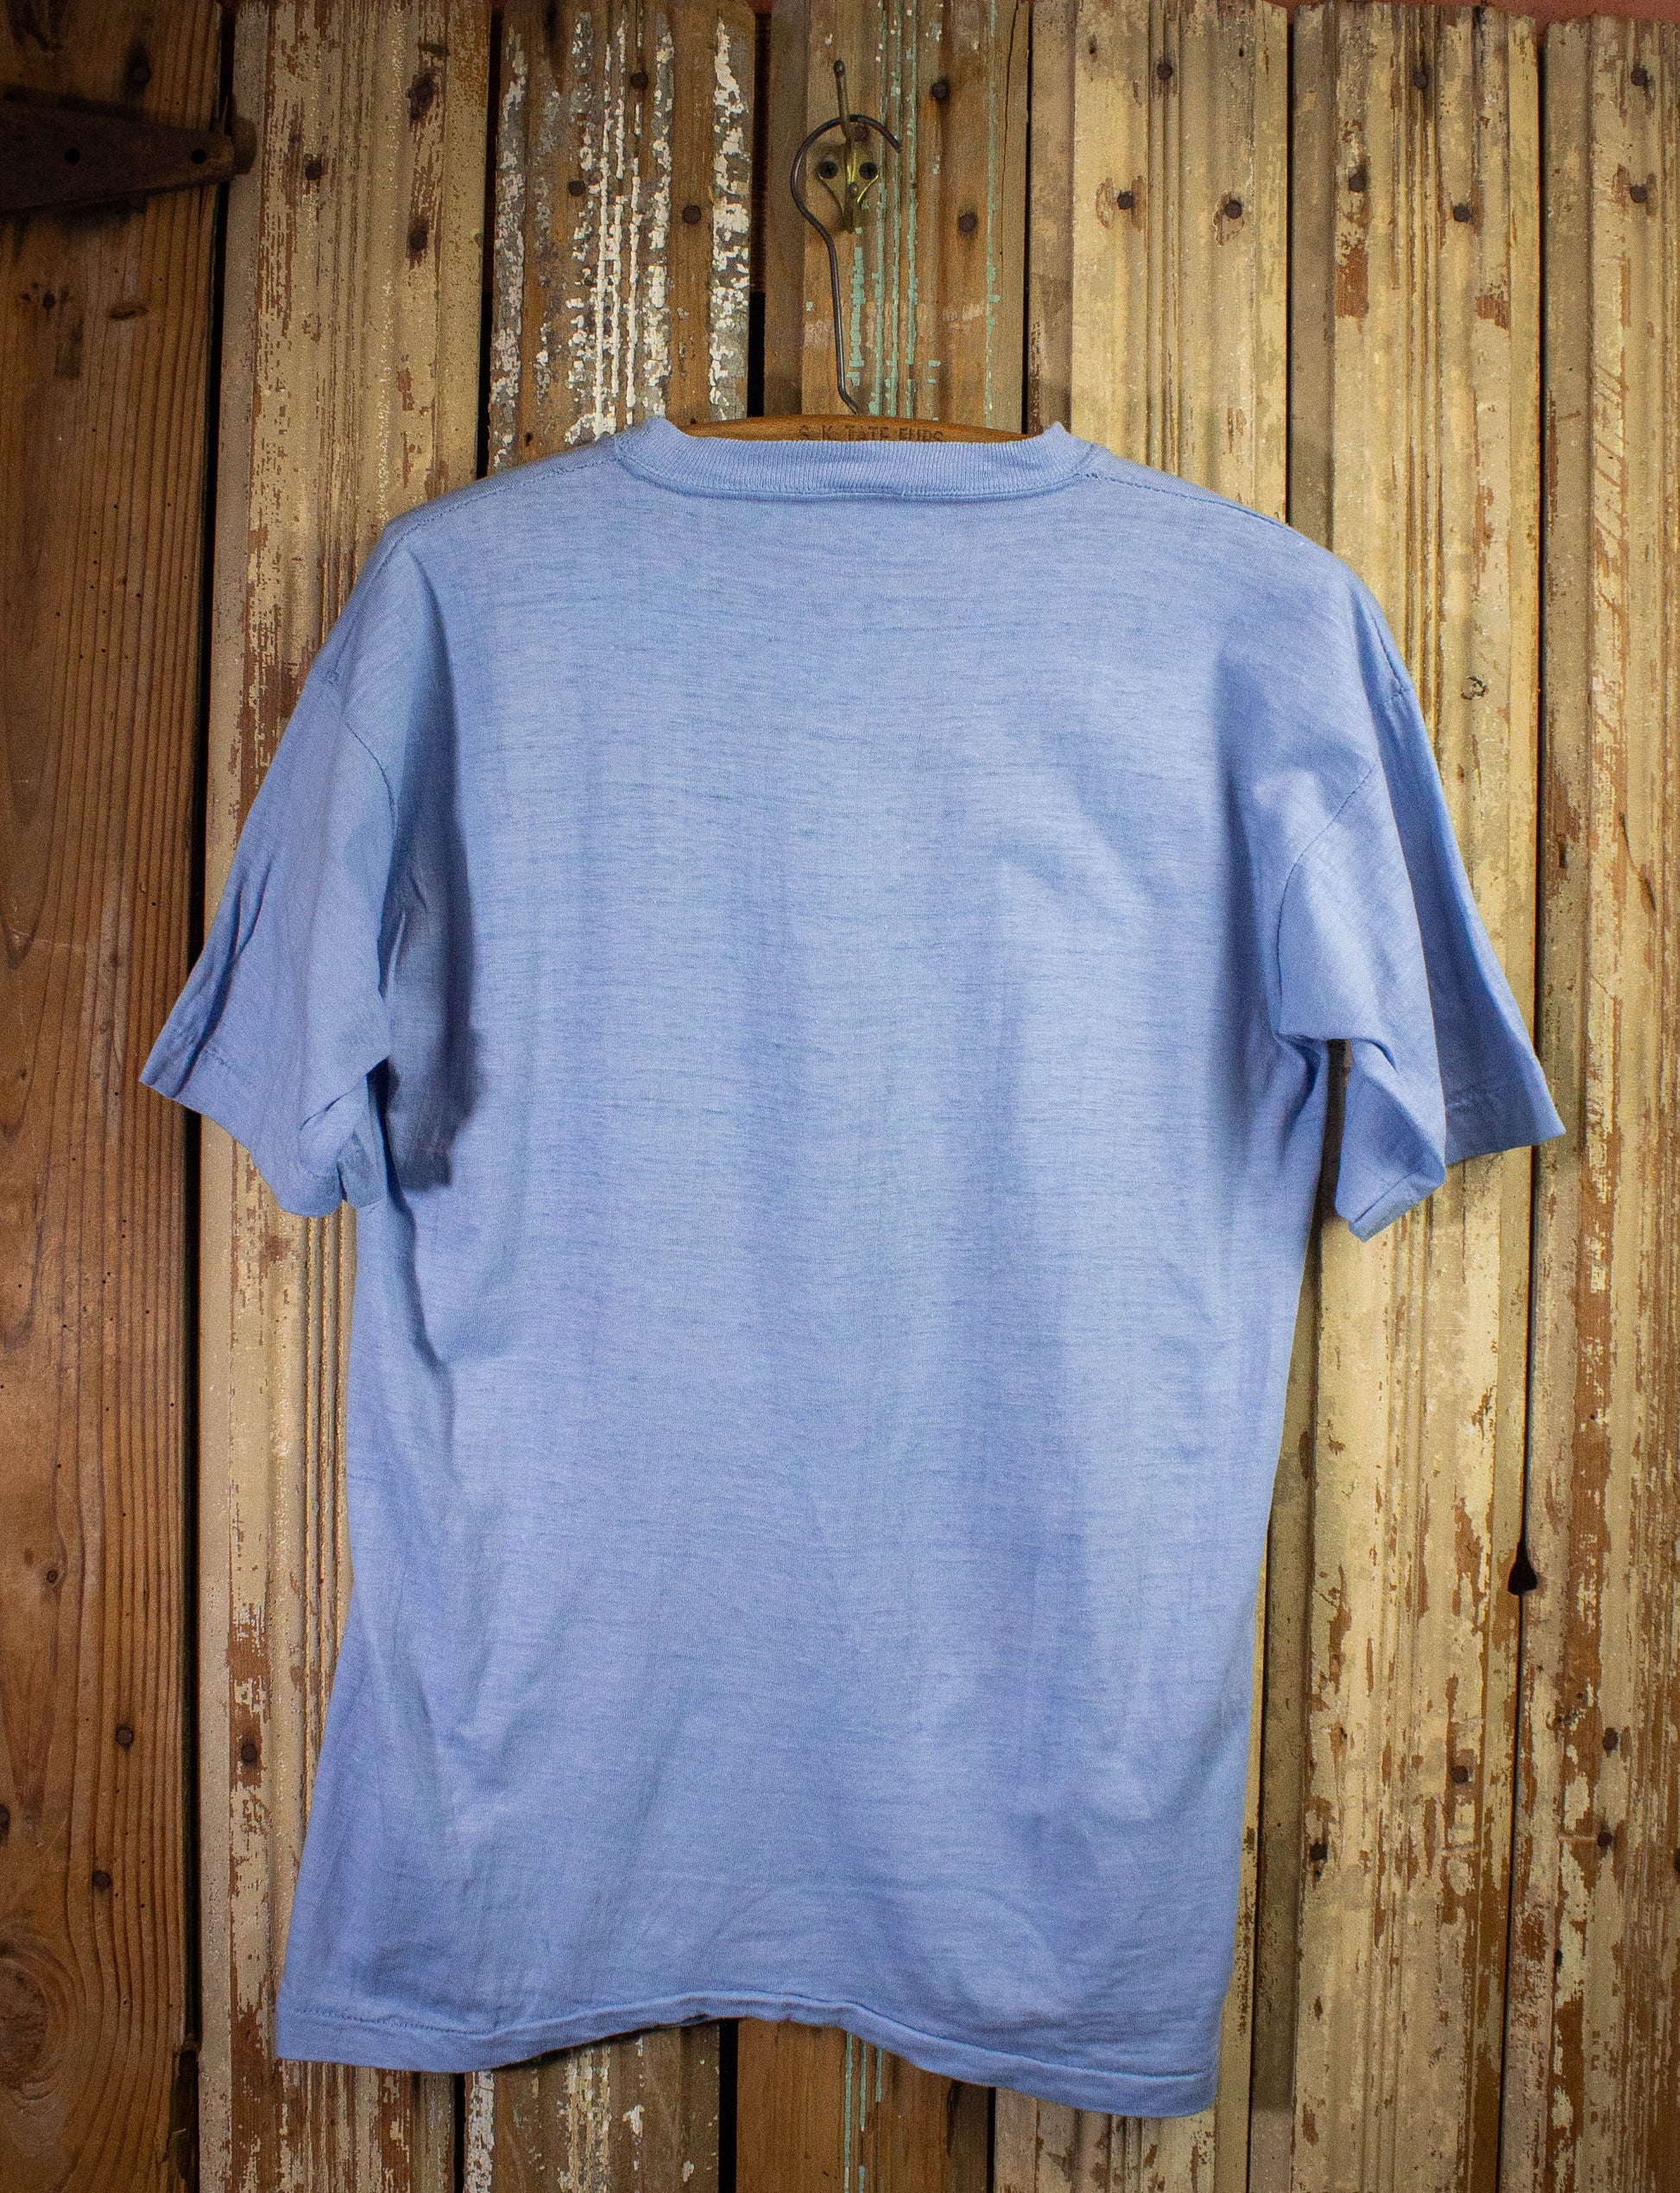 Vintage Jefferson Airplane Concert T Shirt 70s Blue Large